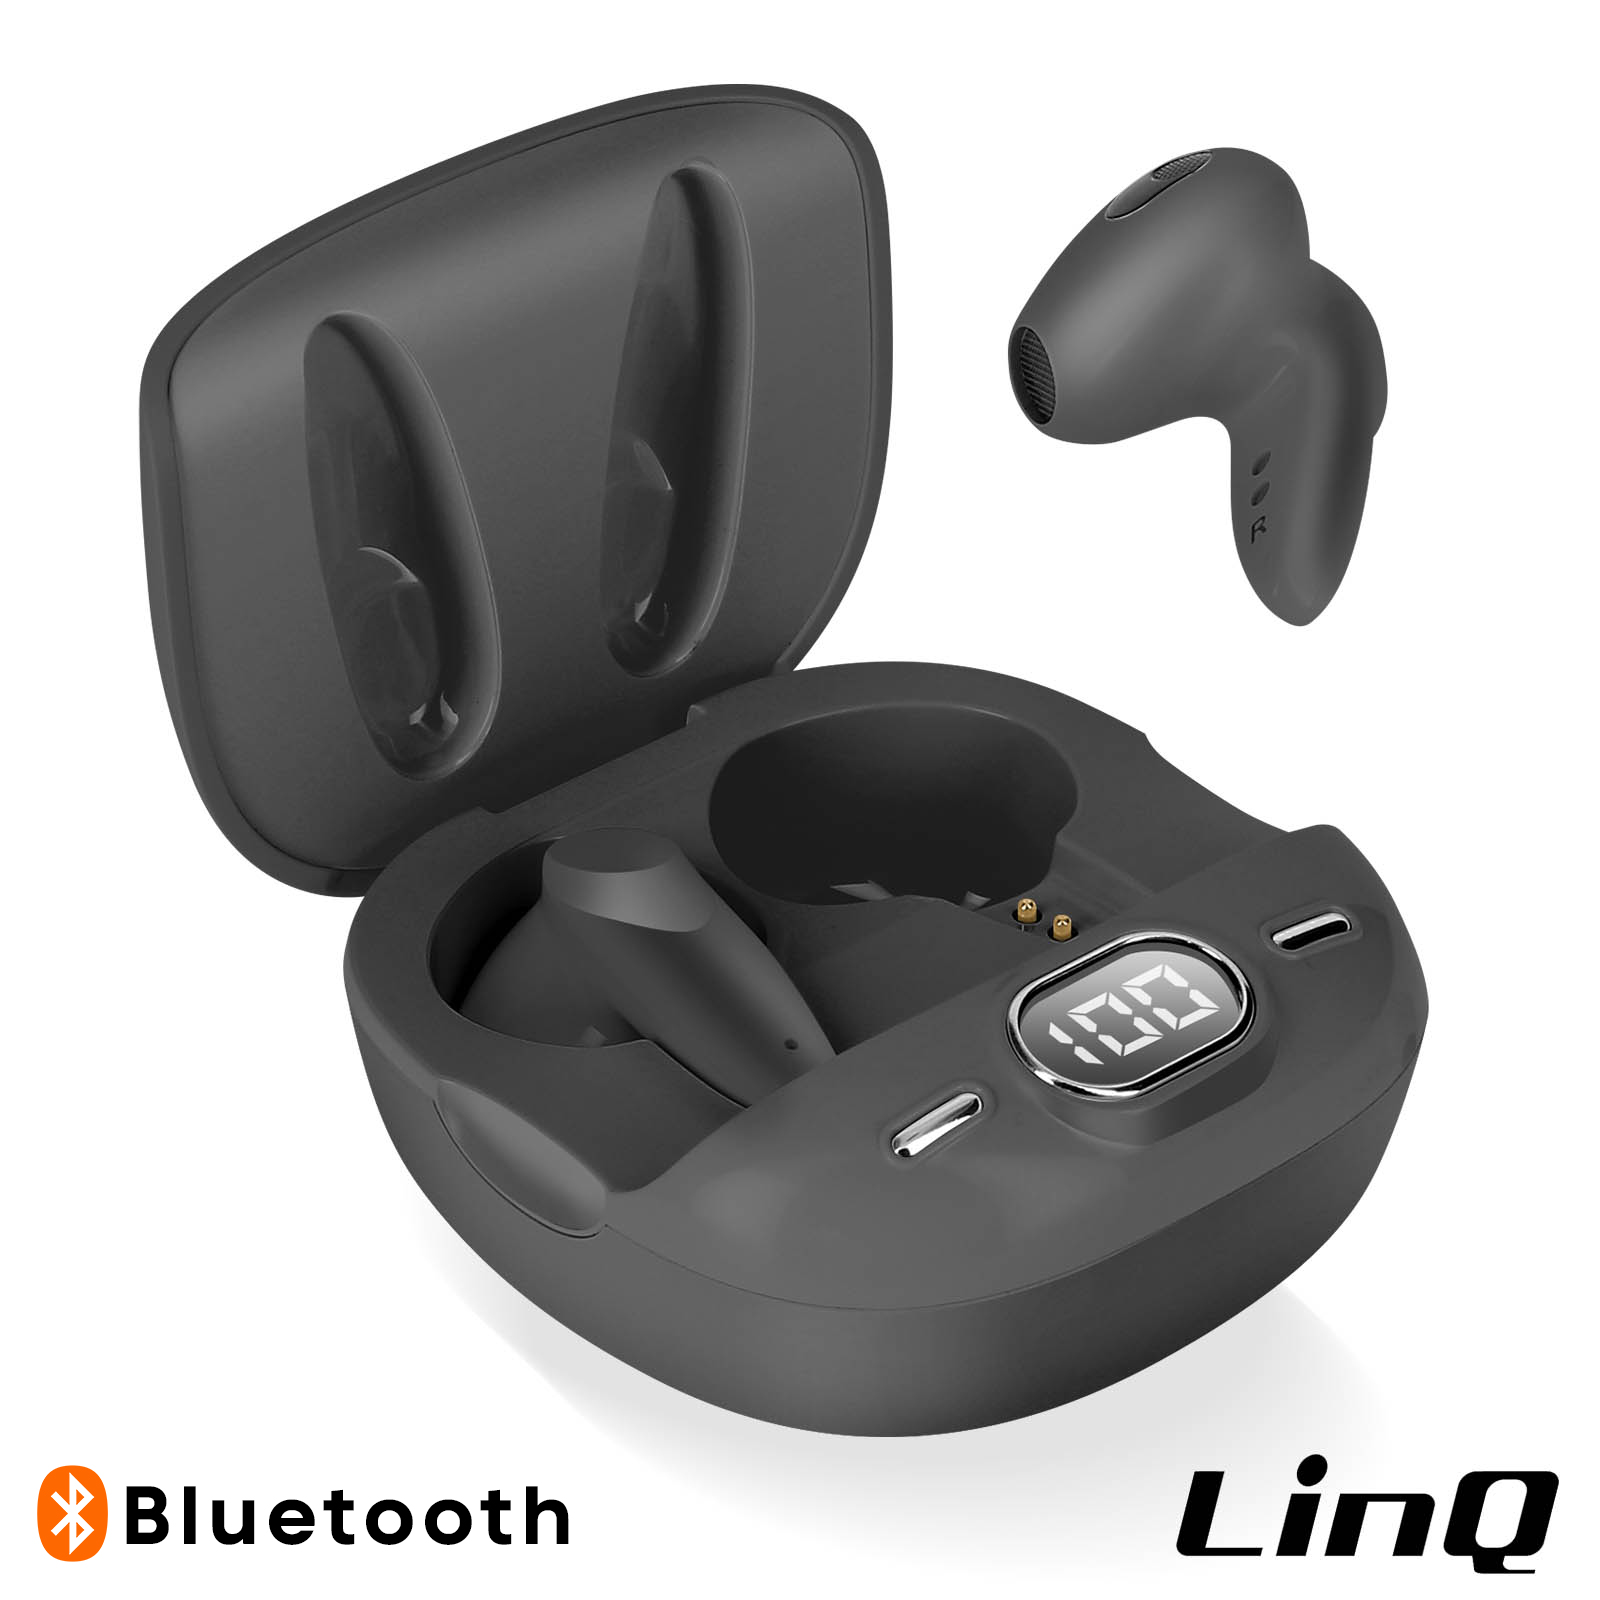 Auriculares sem fio Bluetooth, Kit mãos livres + Controles de toque, LinQ -  Preto - Portugal